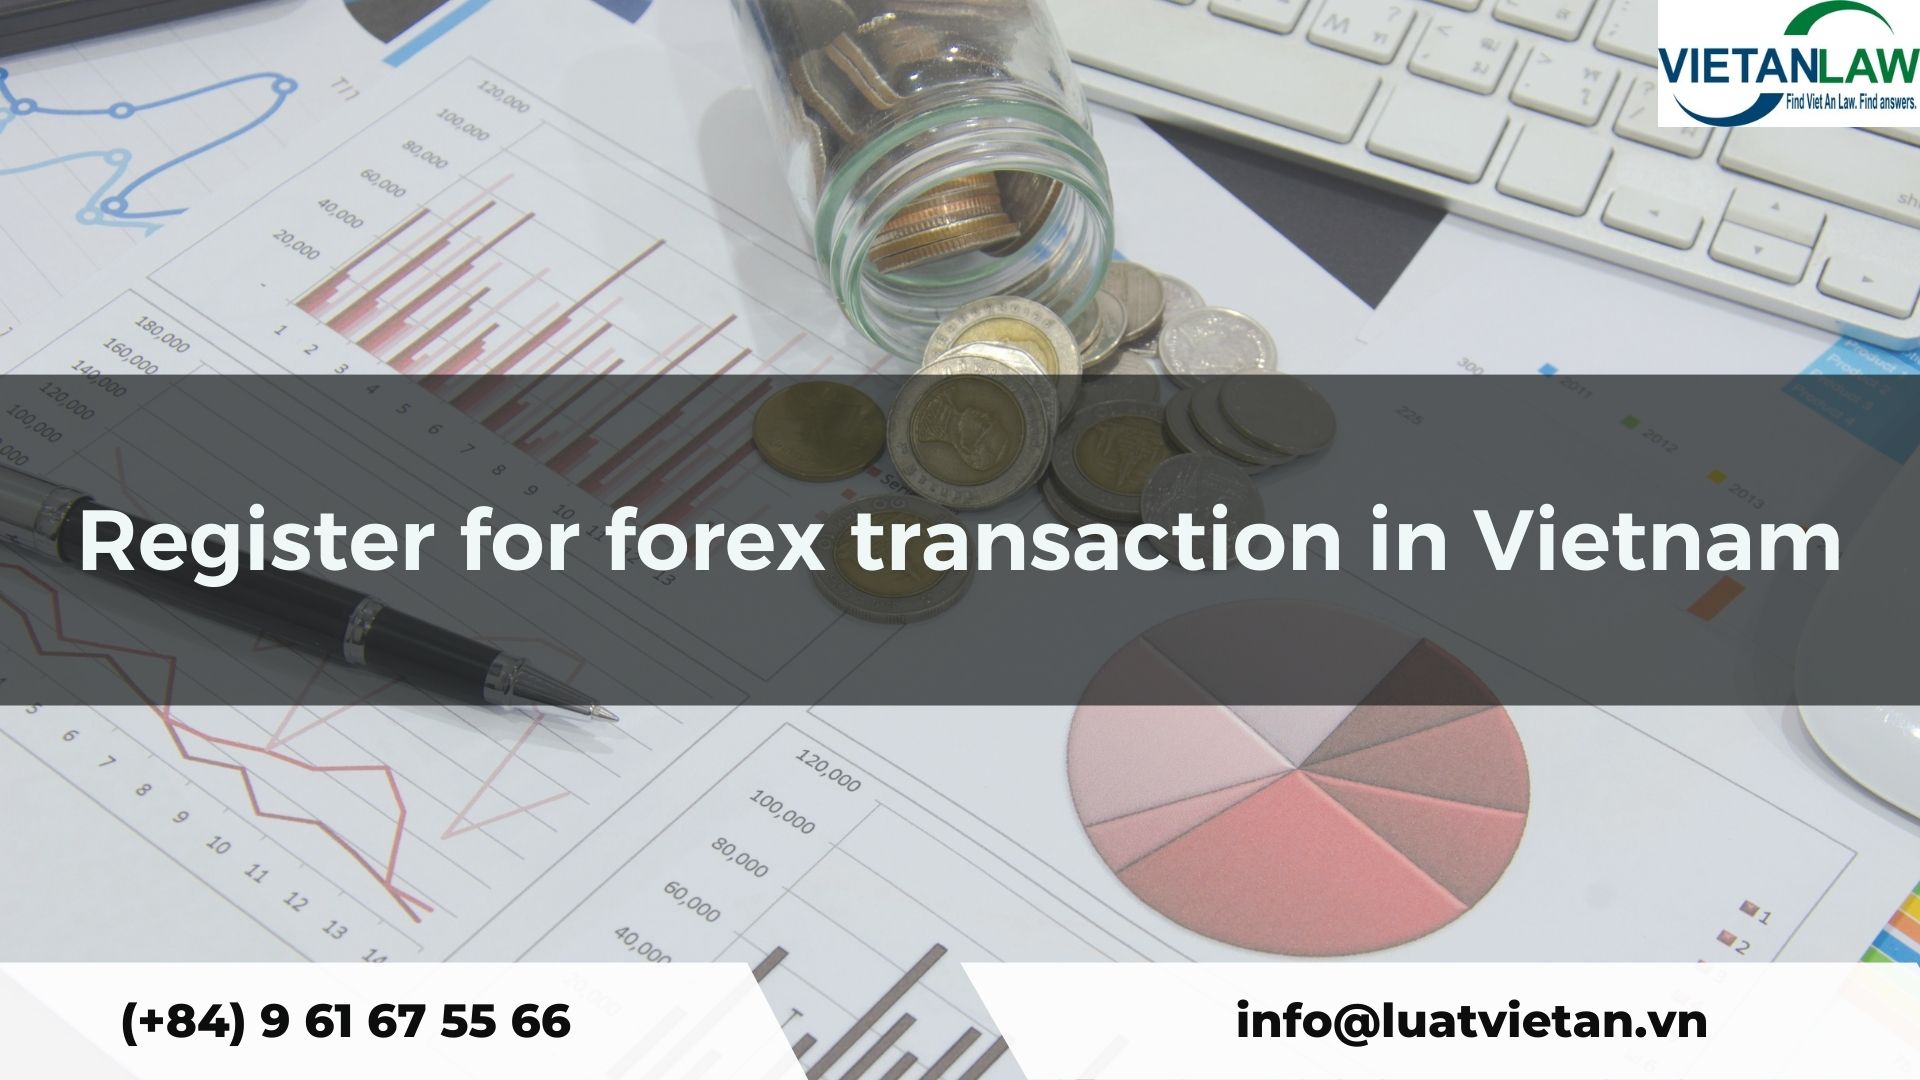 Register for forex transaction in Vietnam